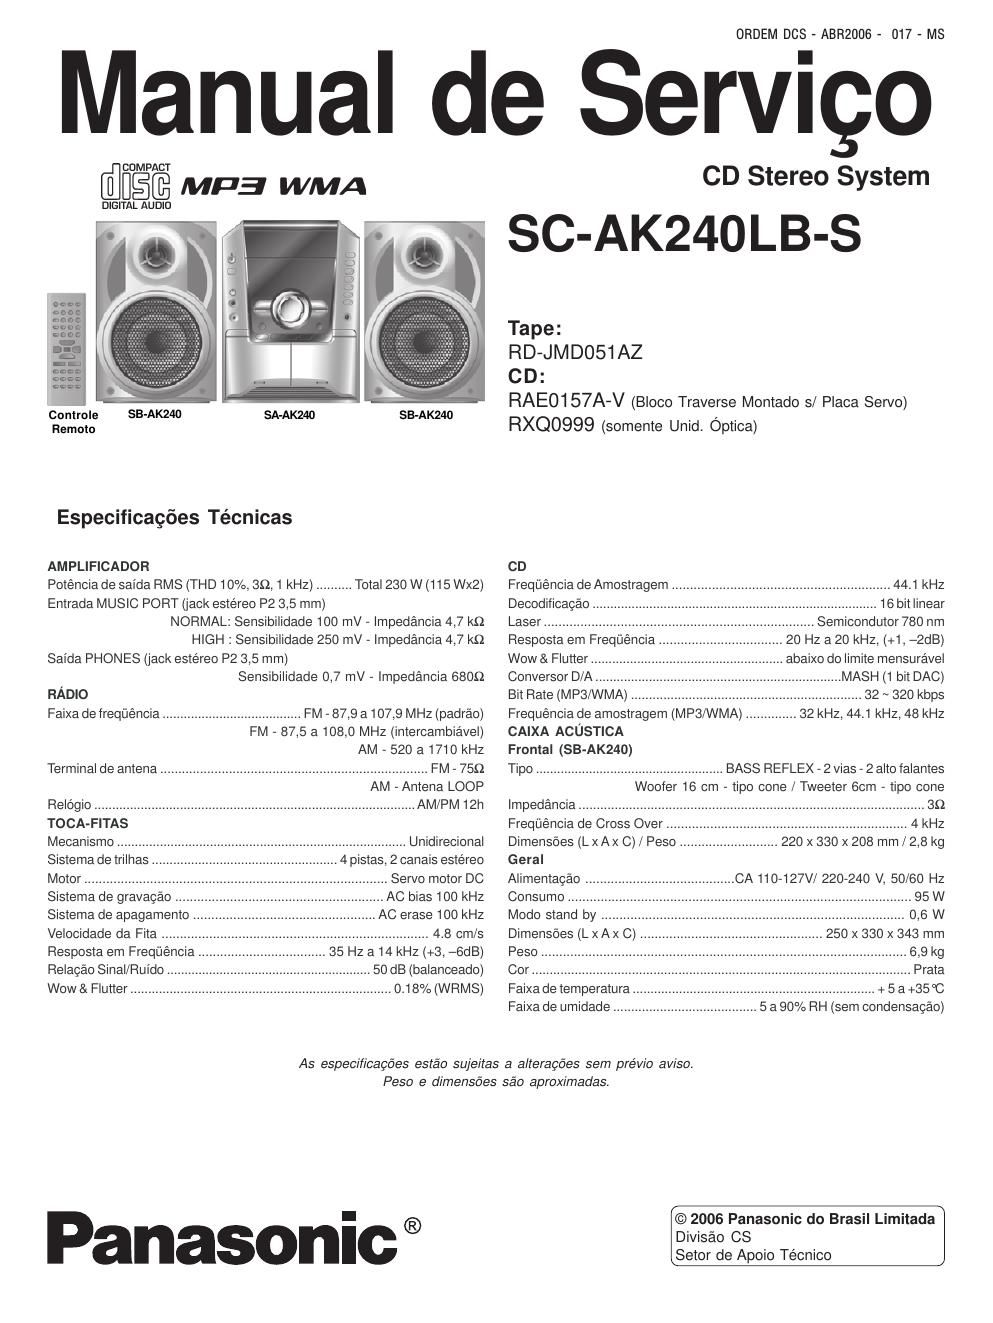 panasonic sc ak 240 lbs service manual